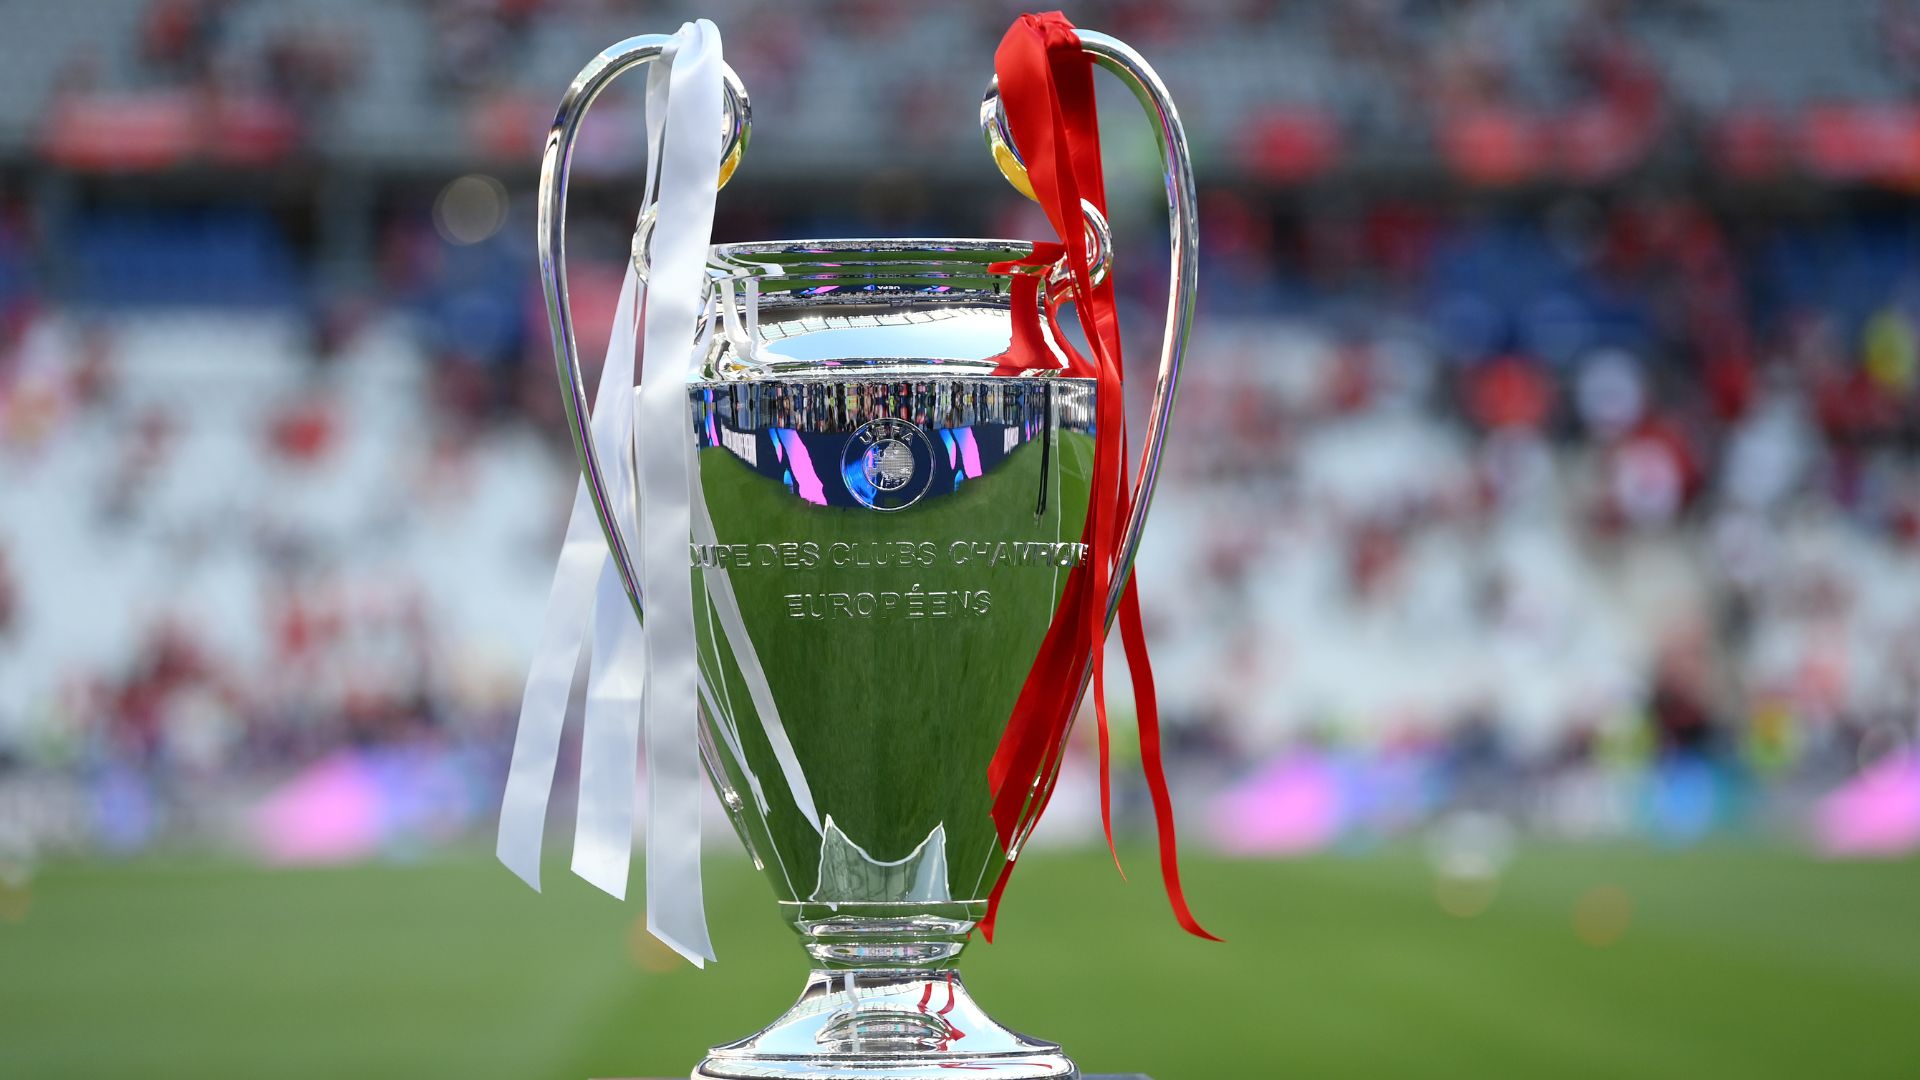 Champions League 2022/23: Os times classificados às quartas de final - Champions  League - Br - Futboo.com